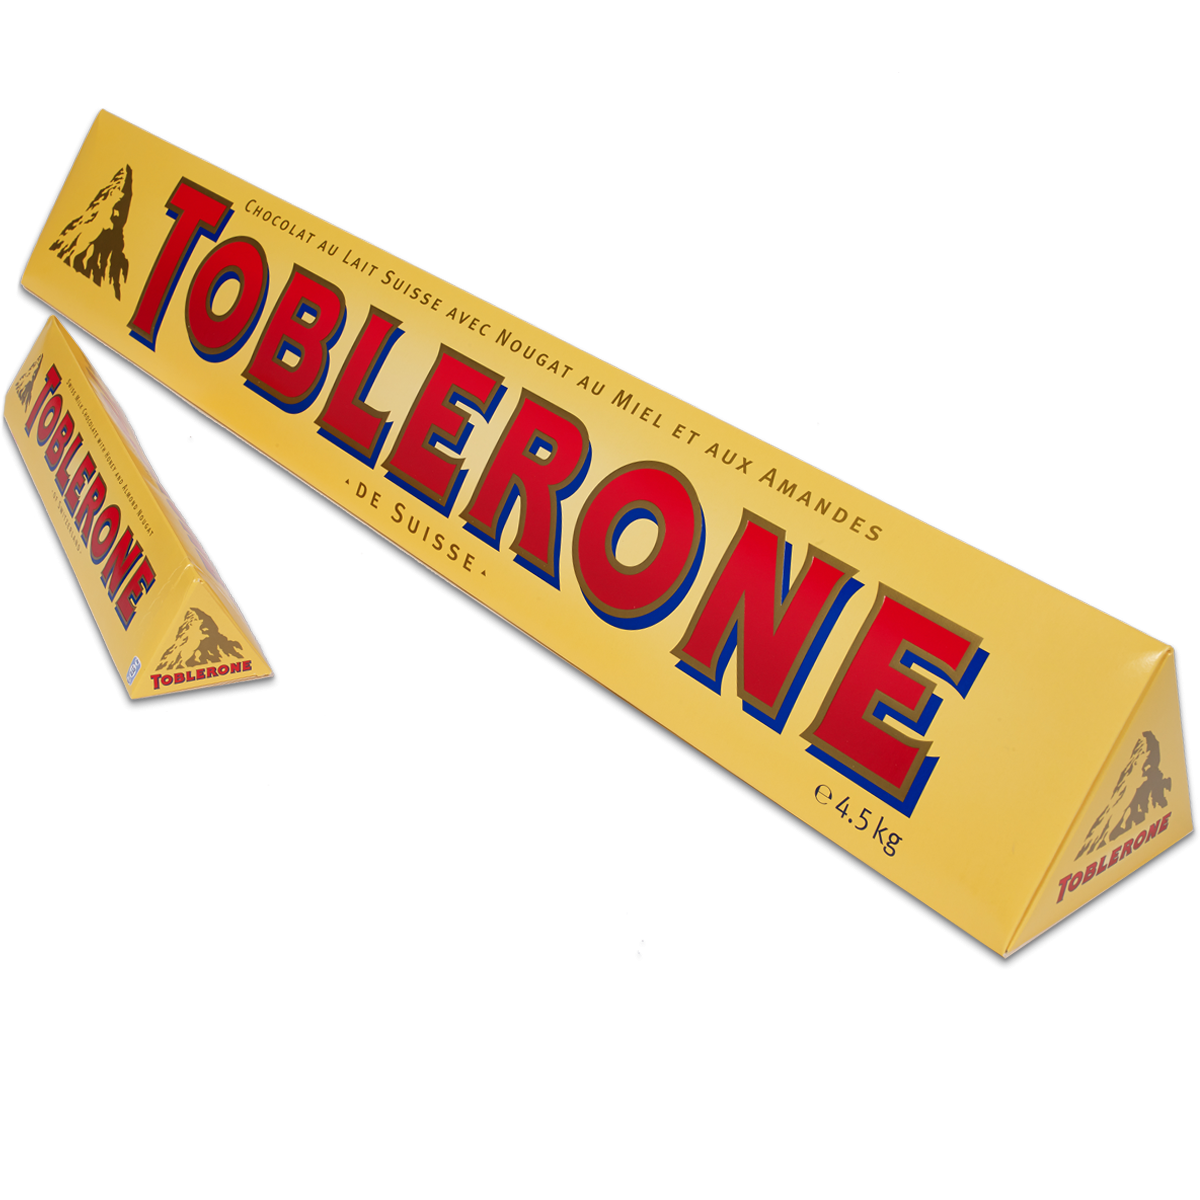 a big toblerone